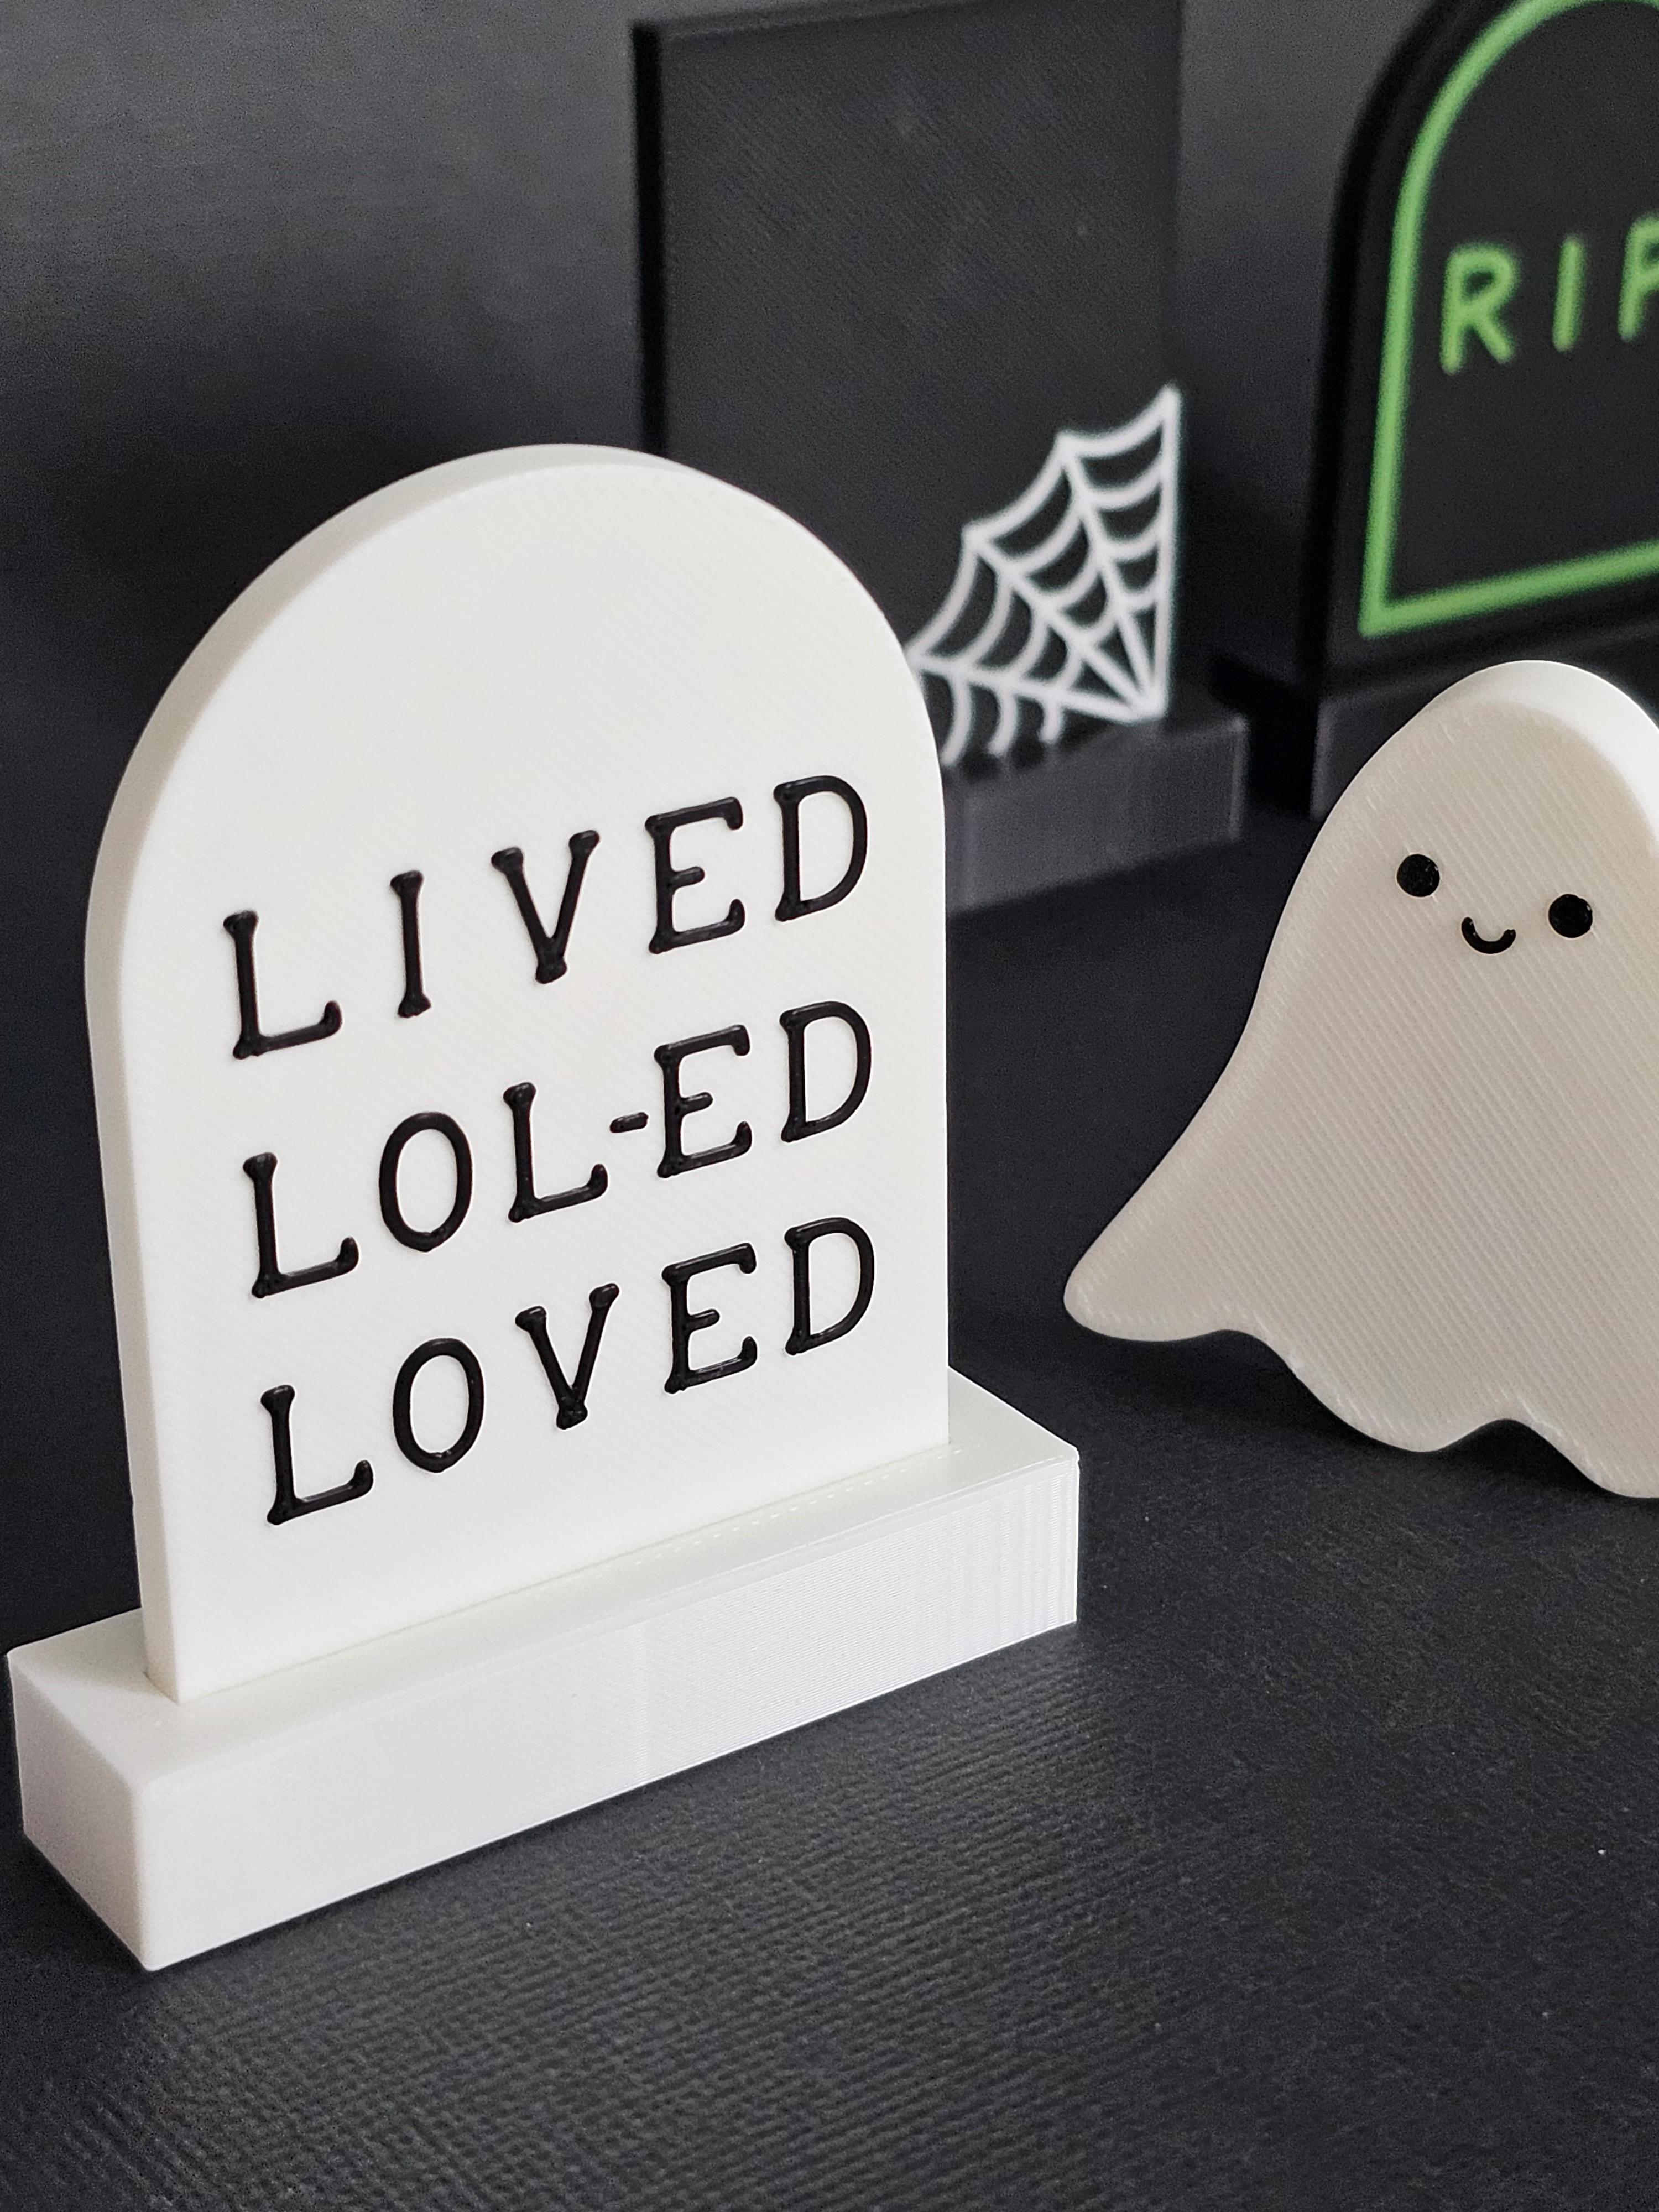 "LIVED LOL-ED LOVED" Funny Halloween Gravestone | Freestanding Decor or Fridge Magnet 3d model